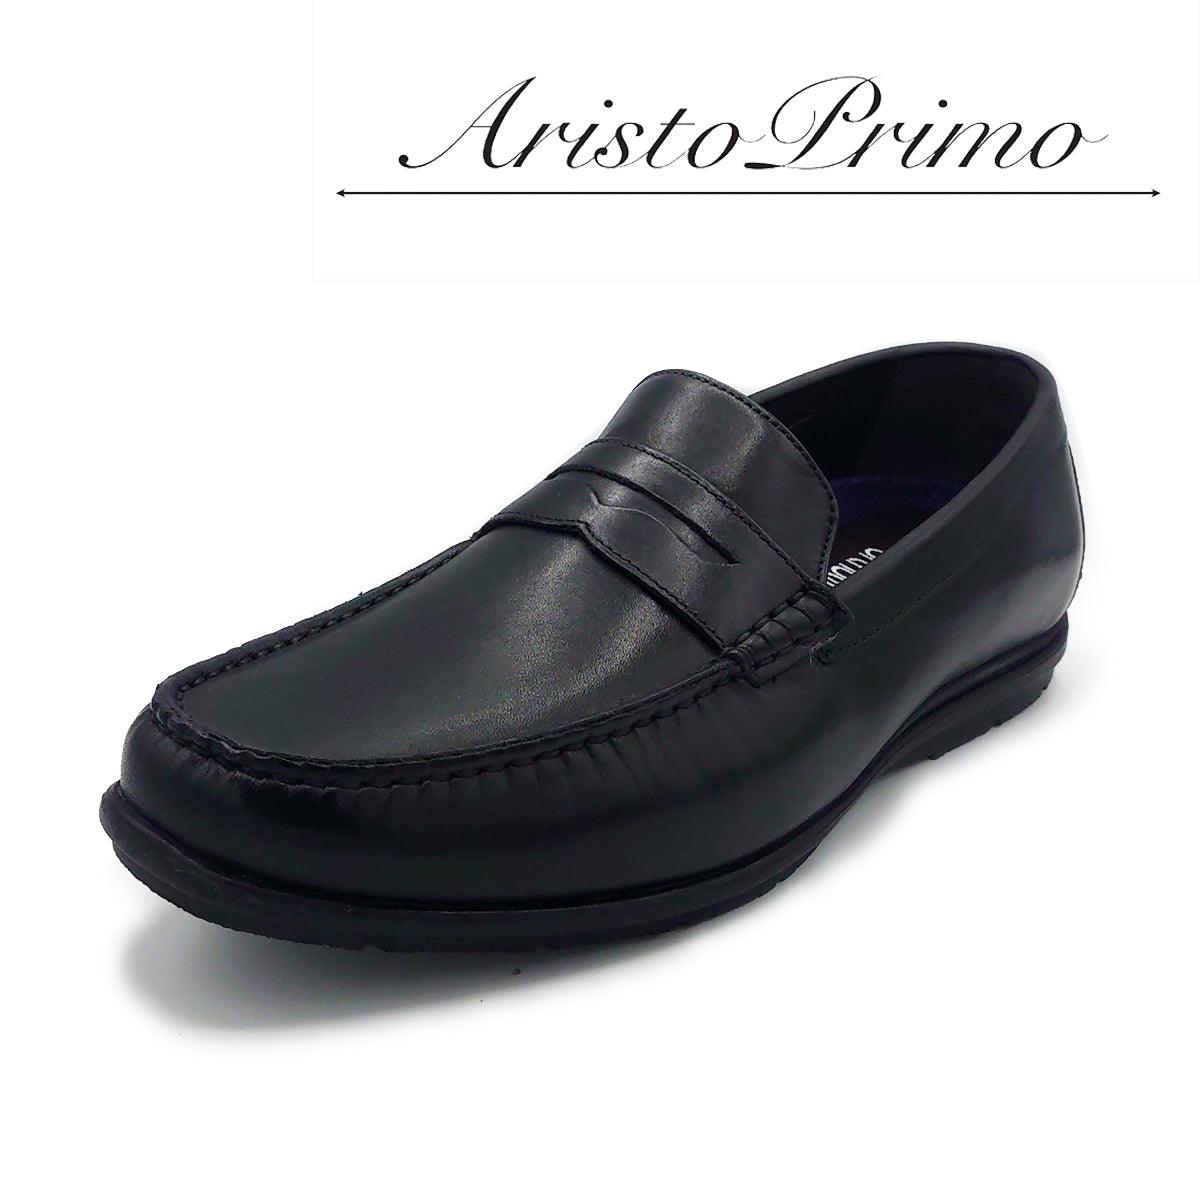 Aristo Primoメンズ ビジネスシューズ ローファー A-5002 - Aristo Primo (アリストプリモ) - 202シューズモリ オンラインショップ